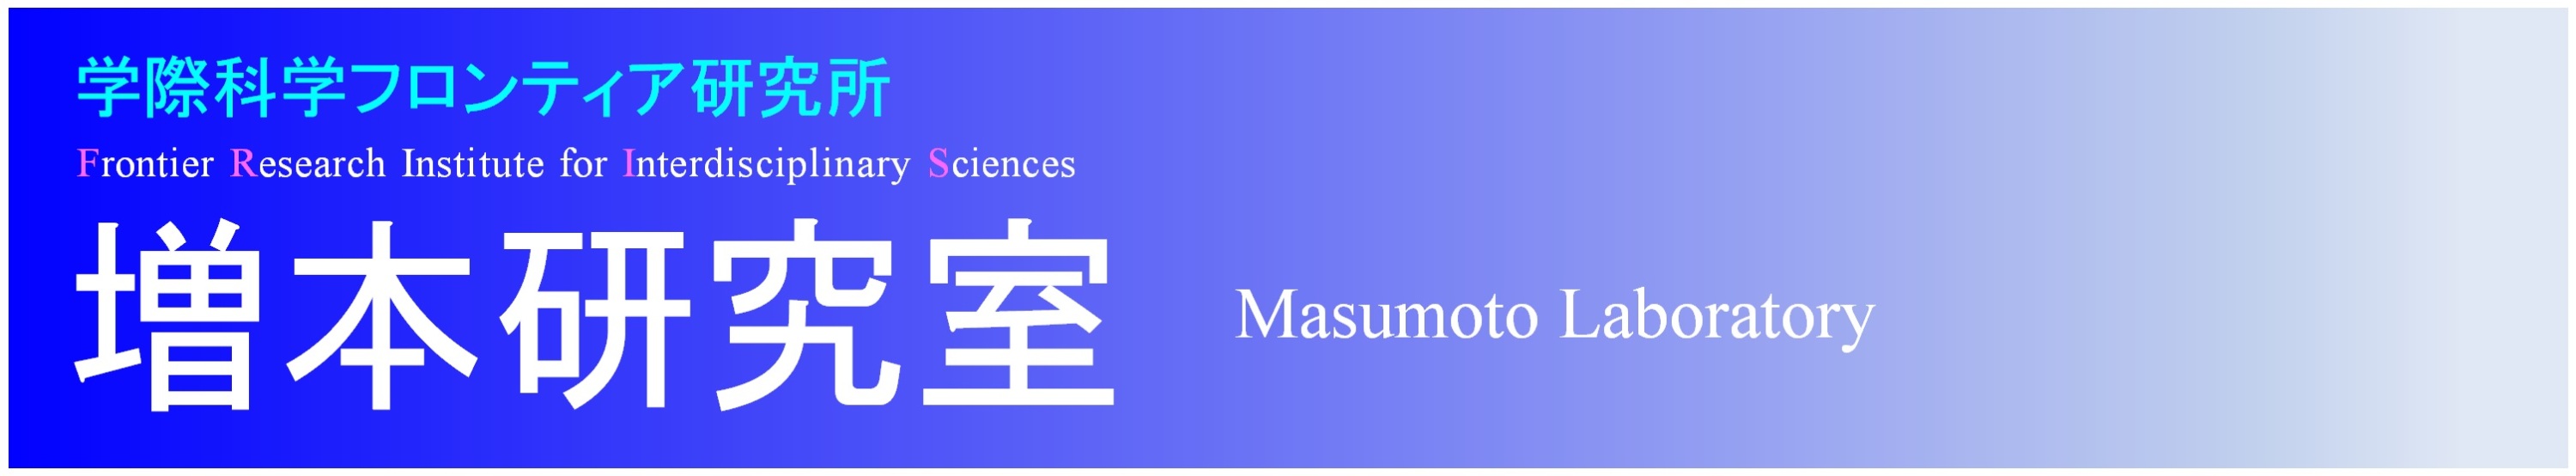 増本研究室へようこそ! <br> Welcome to Masumoto Laboratory!